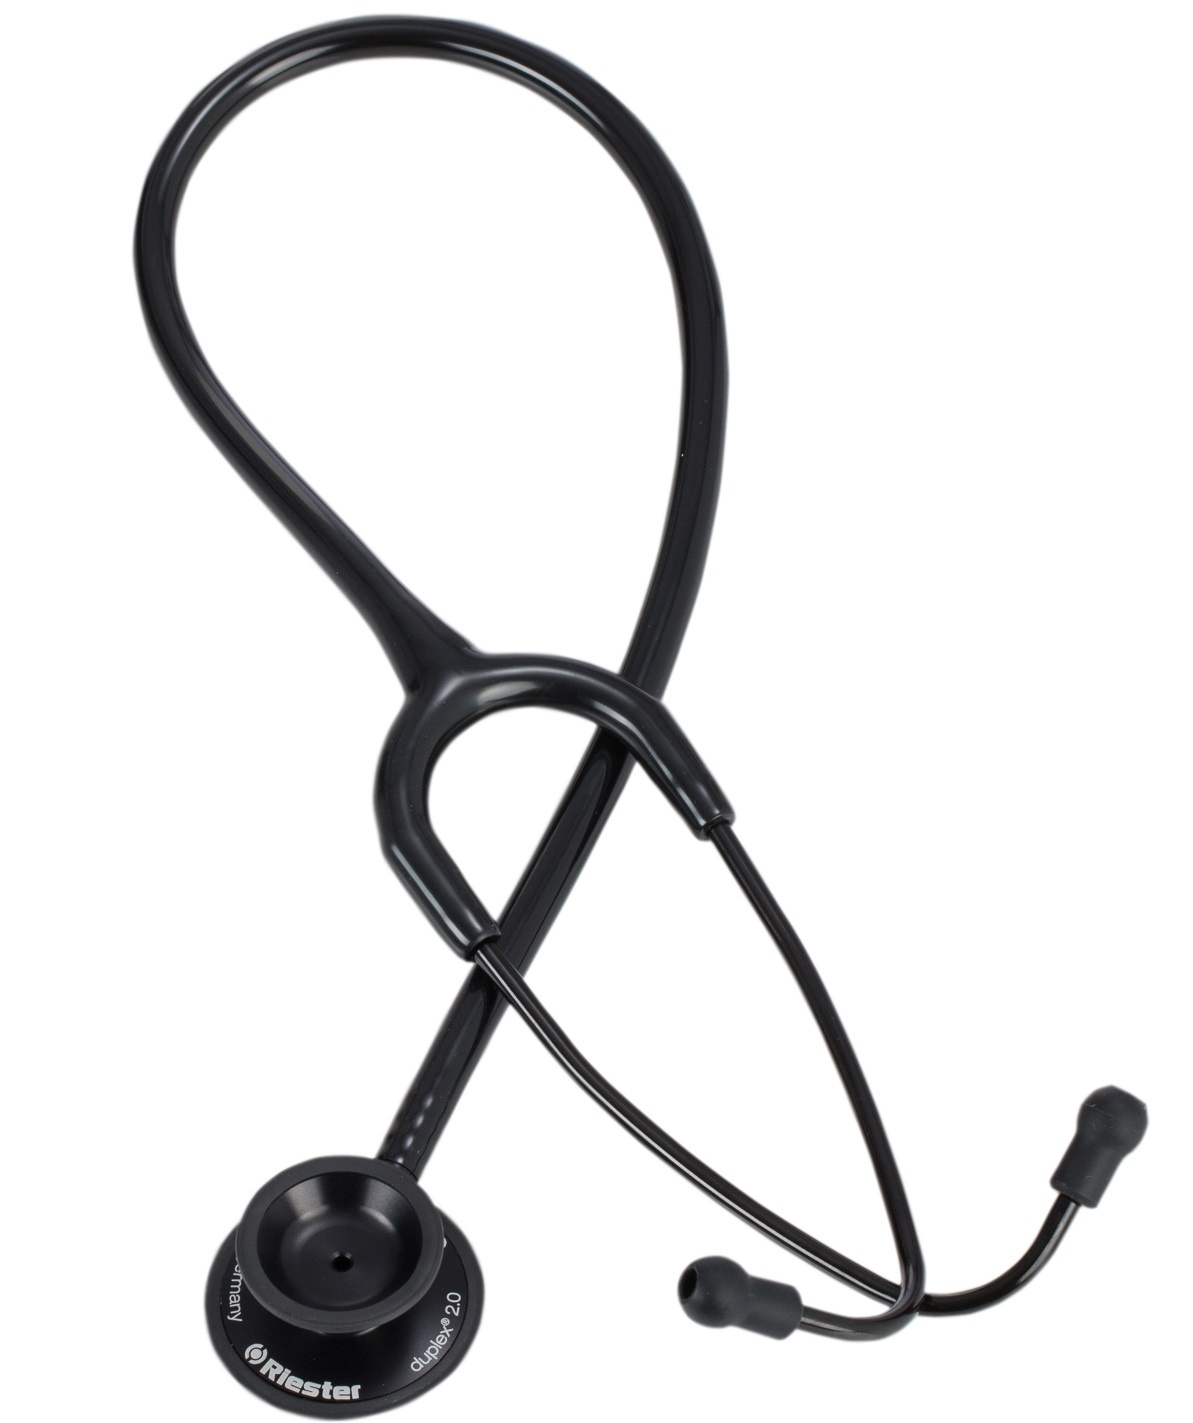 Riester Stethoscope Duplex 2.0 Aluminium Black Edition image 0